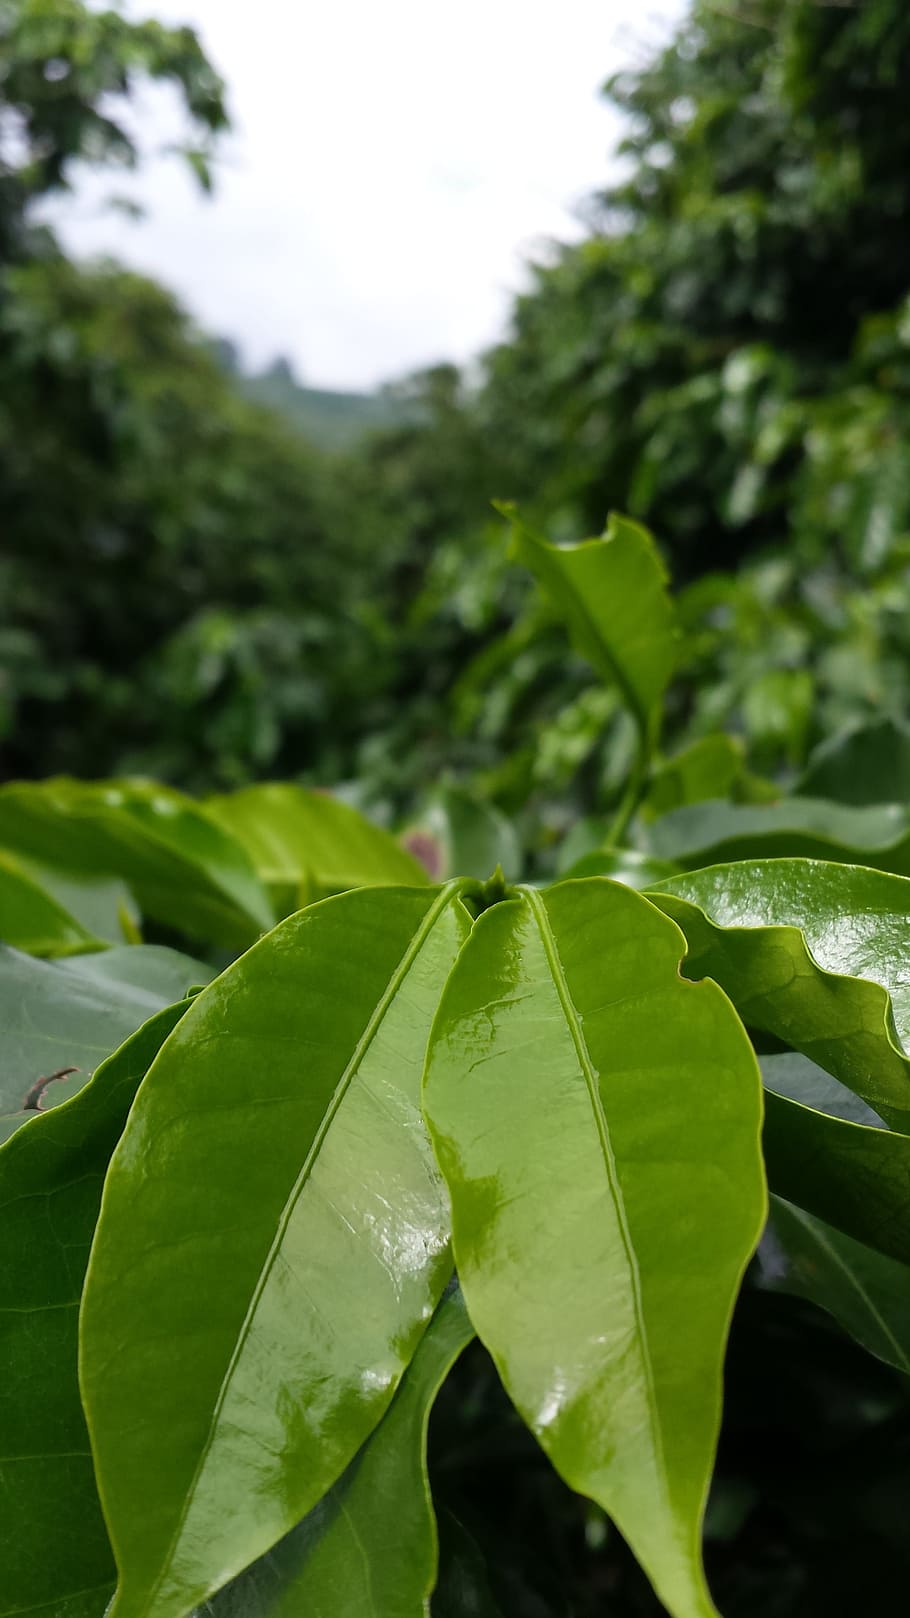 녹색, 잎 식물 클로즈업 사진, 커피 나무, 커피, 농장, 수확고, 커피 농장, 카페, 잎, 식물 부분